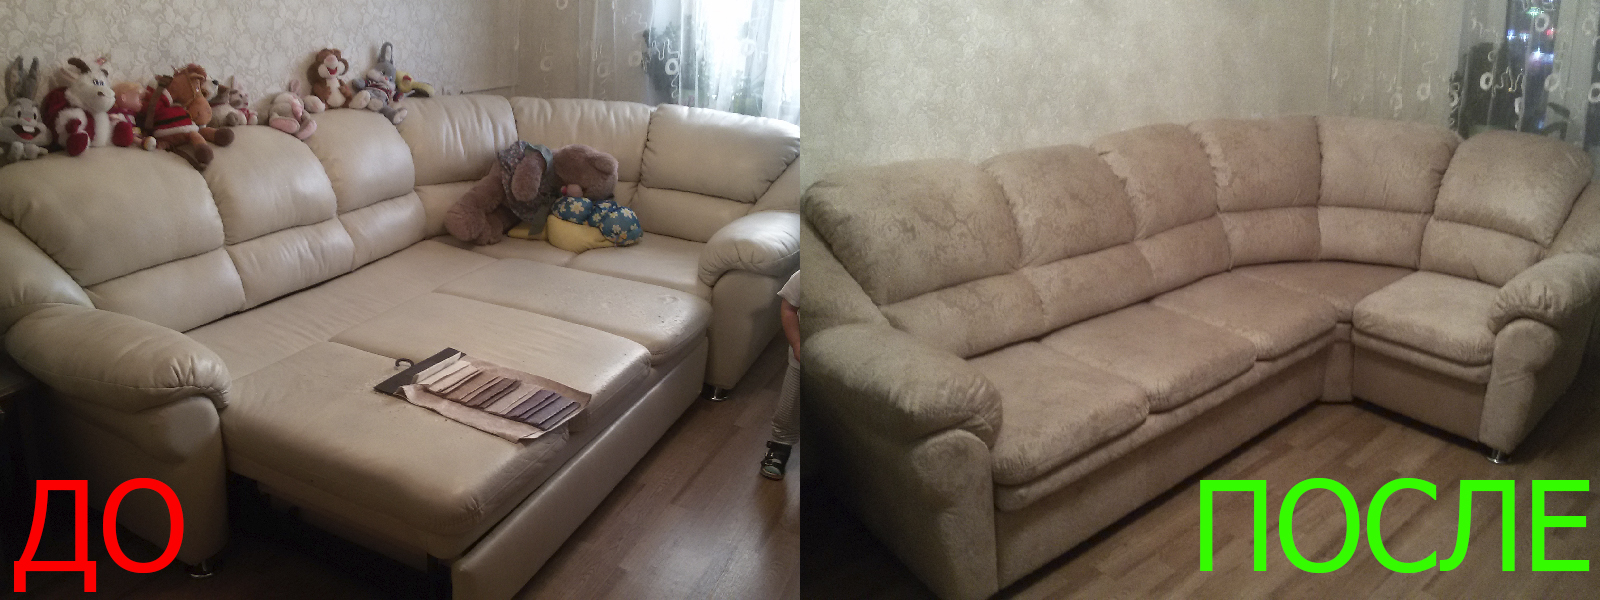 Ремонт диванов искусственной кожей в Краснодаре от опытных мастеров компании MebelProfi - 100% гарантия